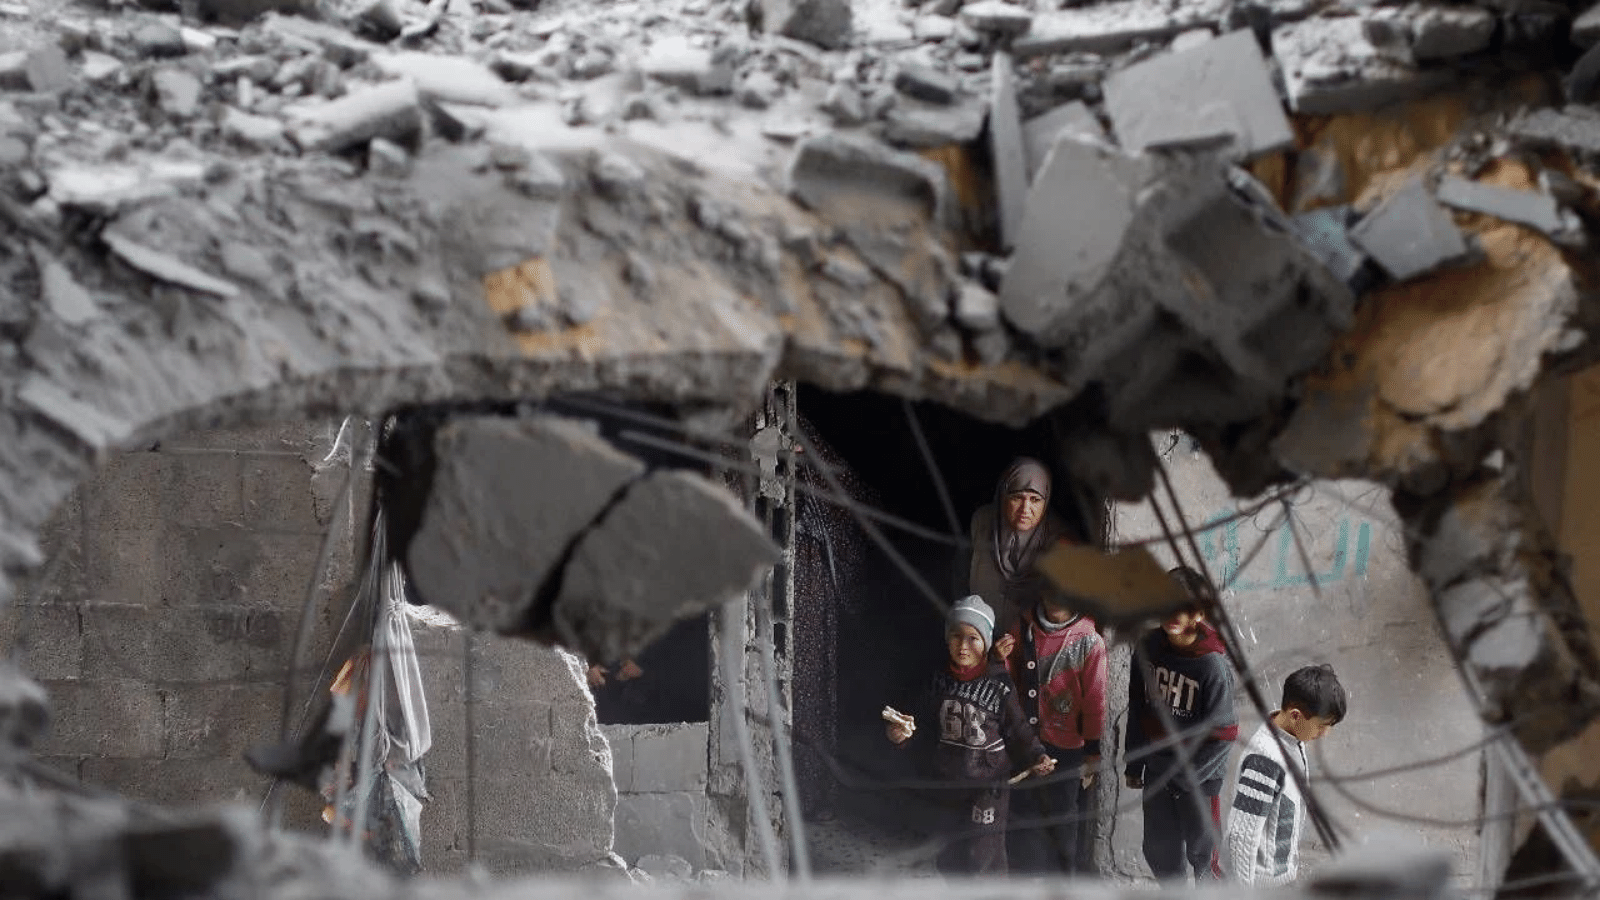 İsrail’in Gazze’ye saldırıları devam ediyor: 3 ev bombalandı, 14 kişi yaşamını yitirdi